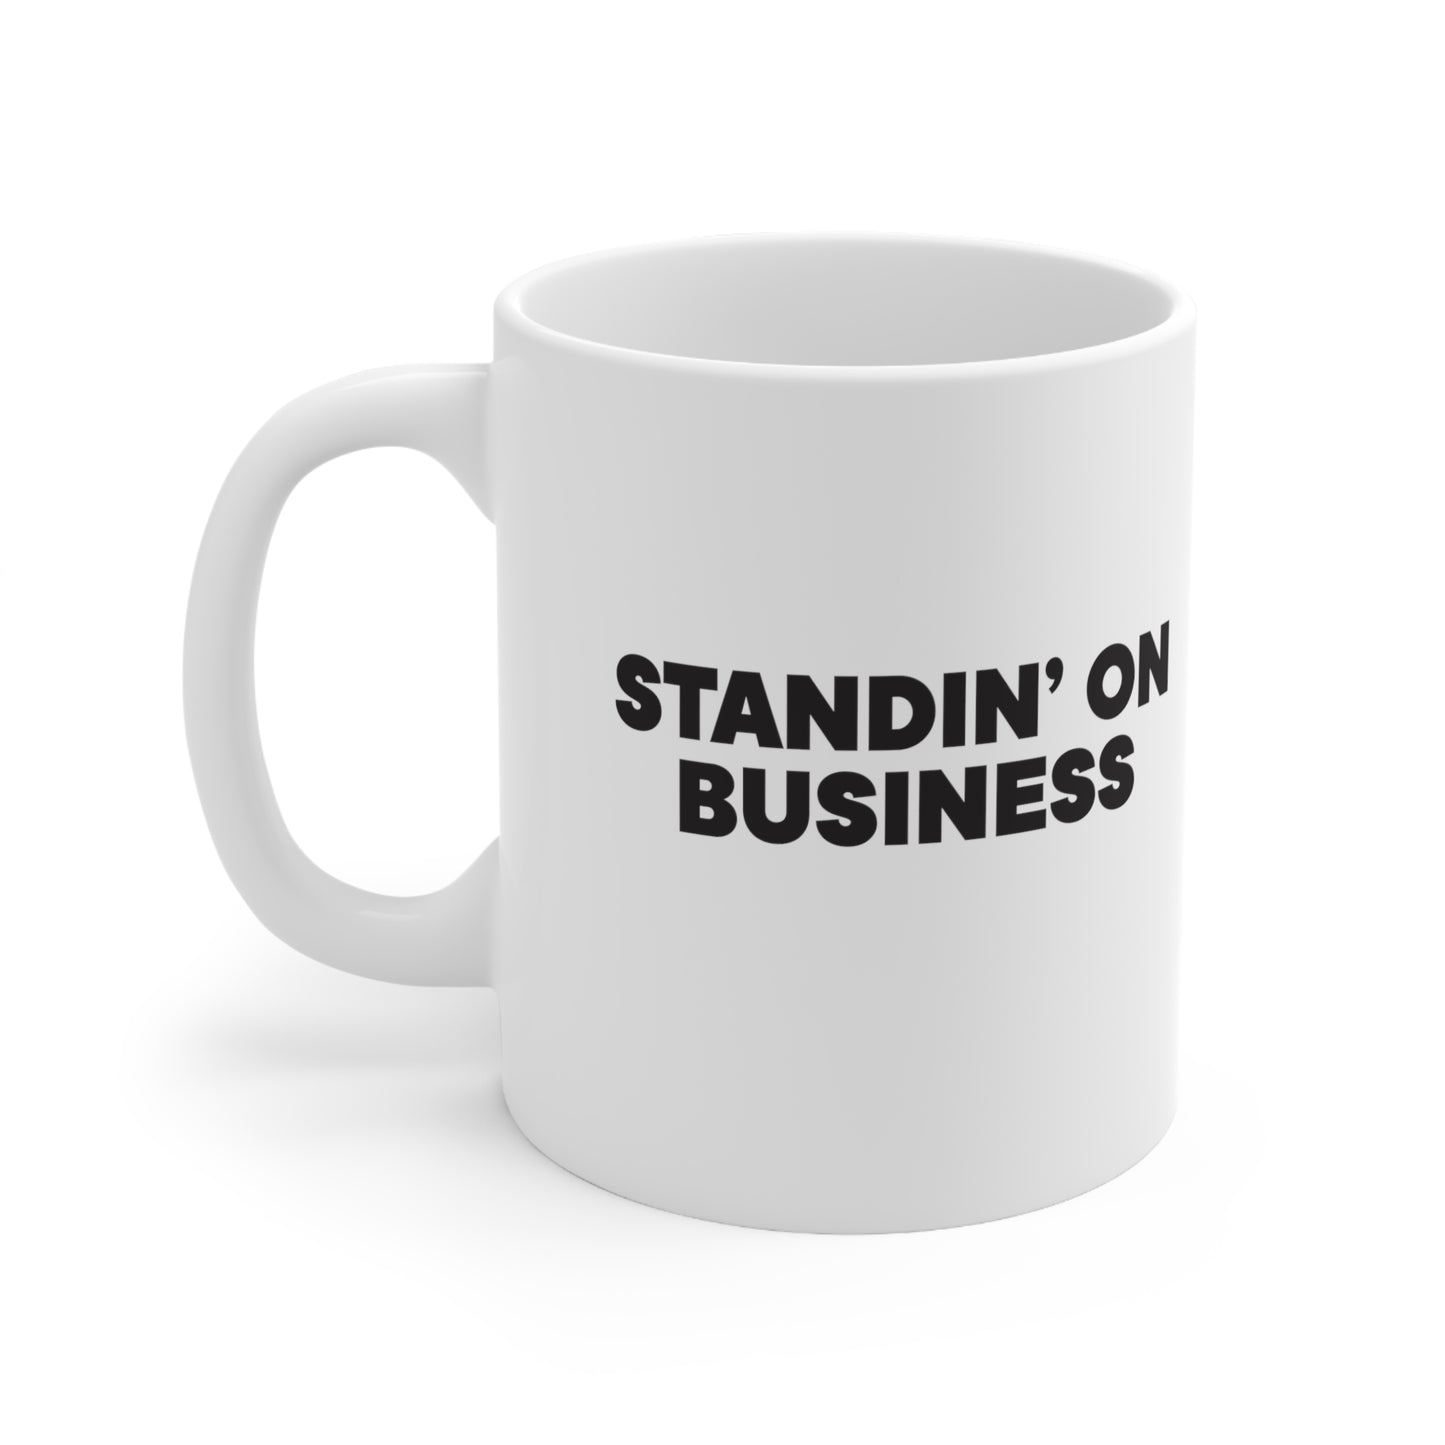 Standin' on Business Mug